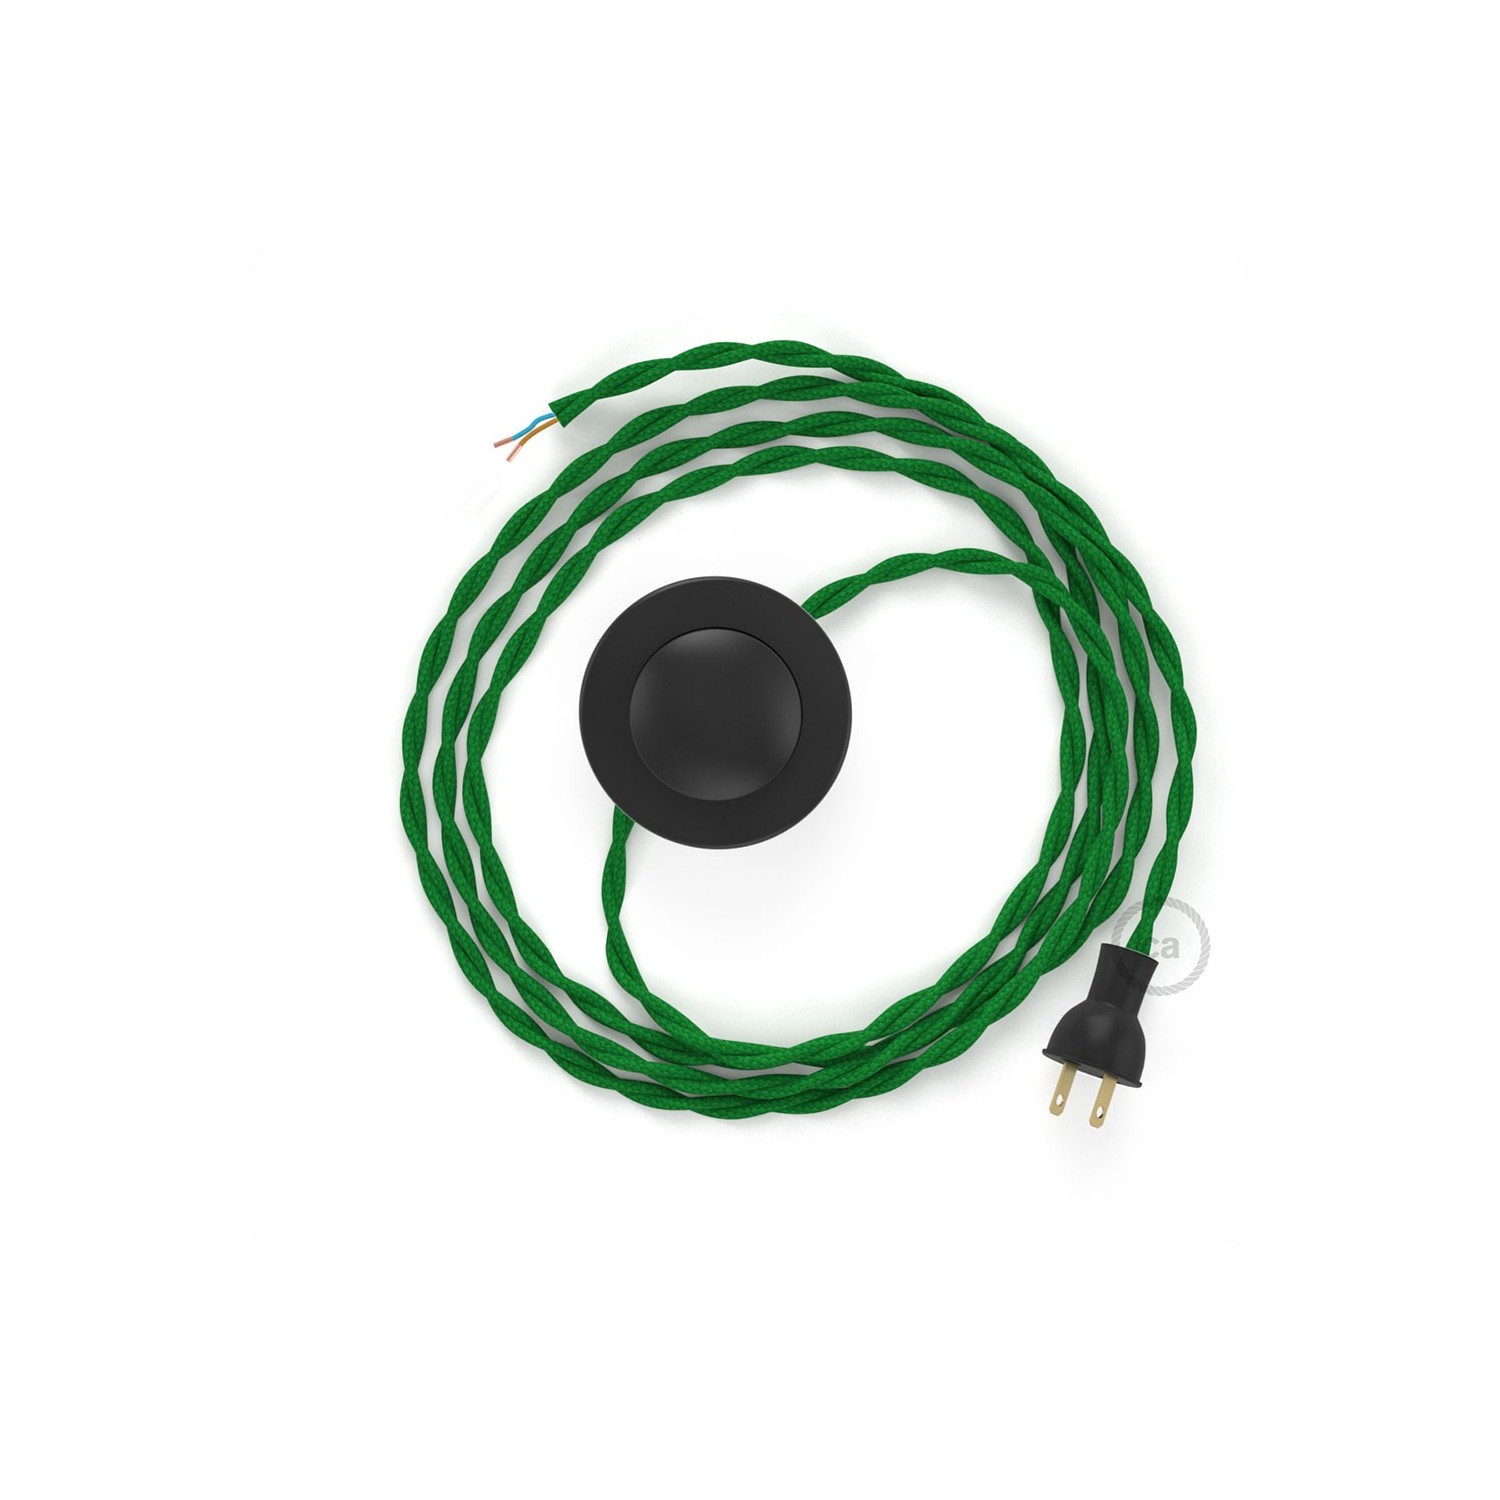 Cableado para lámpara de piso, cable TM06 Rayón Verde 3 m. Elige tu el color de la clavija y del interruptor!